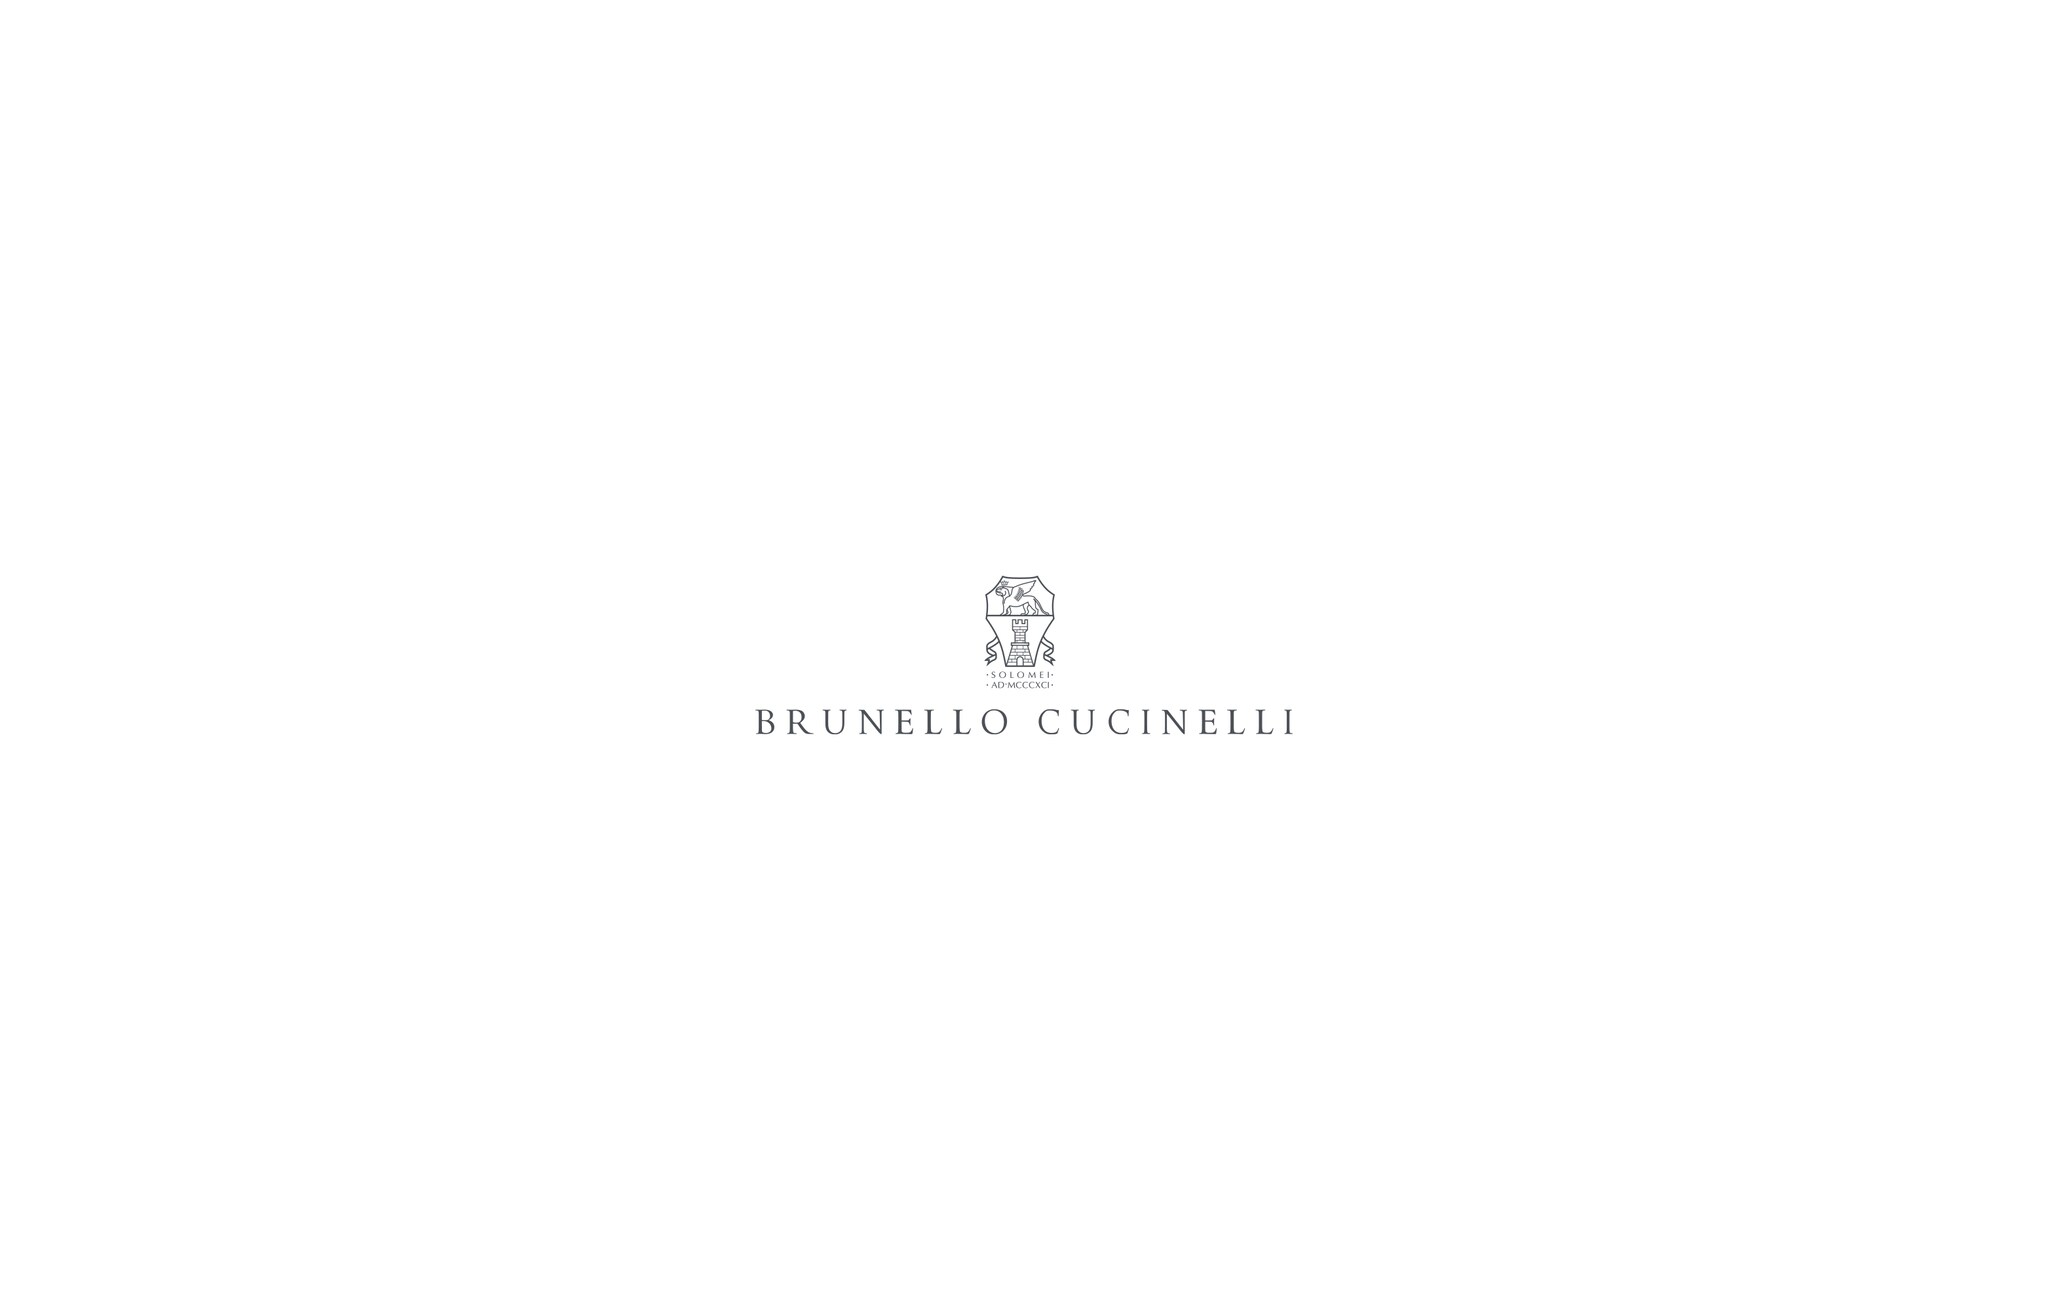  装饰镶珠的凉鞋 深灰 女童 - Brunello Cucinelli 